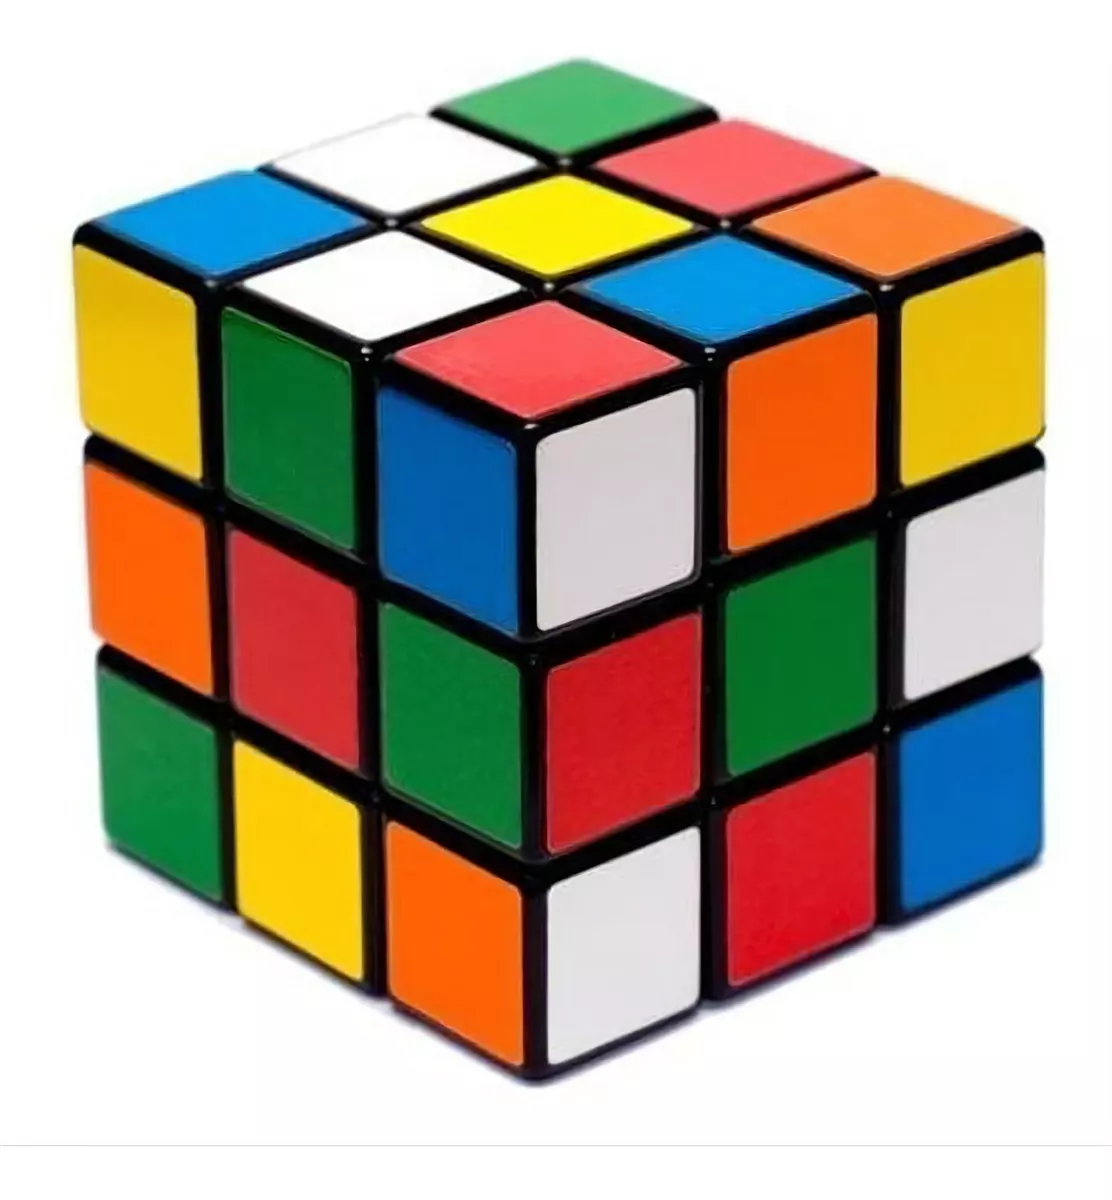 Segunda imagem para pesquisa de cubo magico